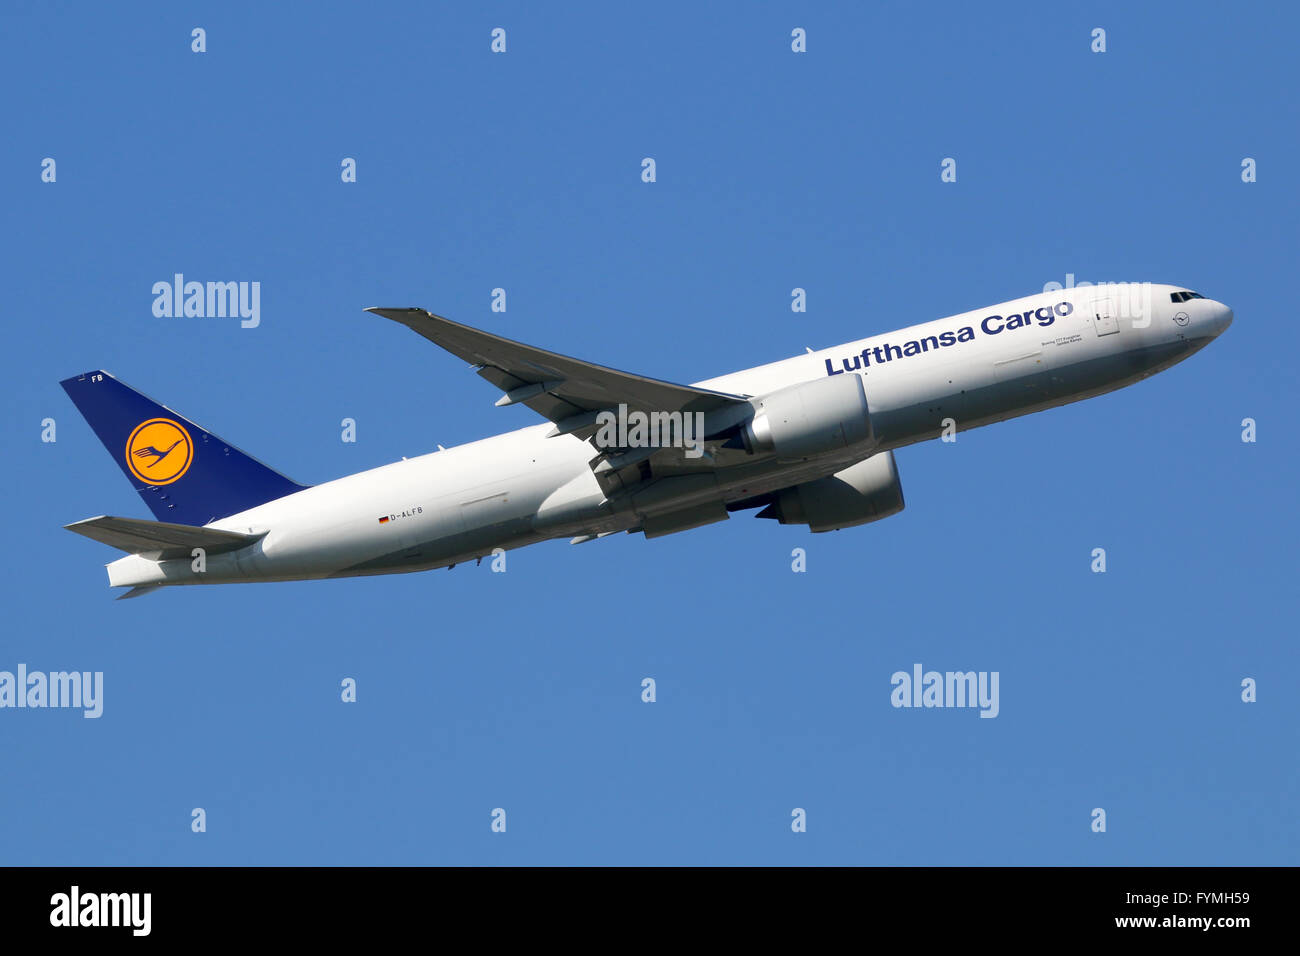 Lufthansa Cargo Boeing 777 F Flugzeug Stockfotografie - Alamy